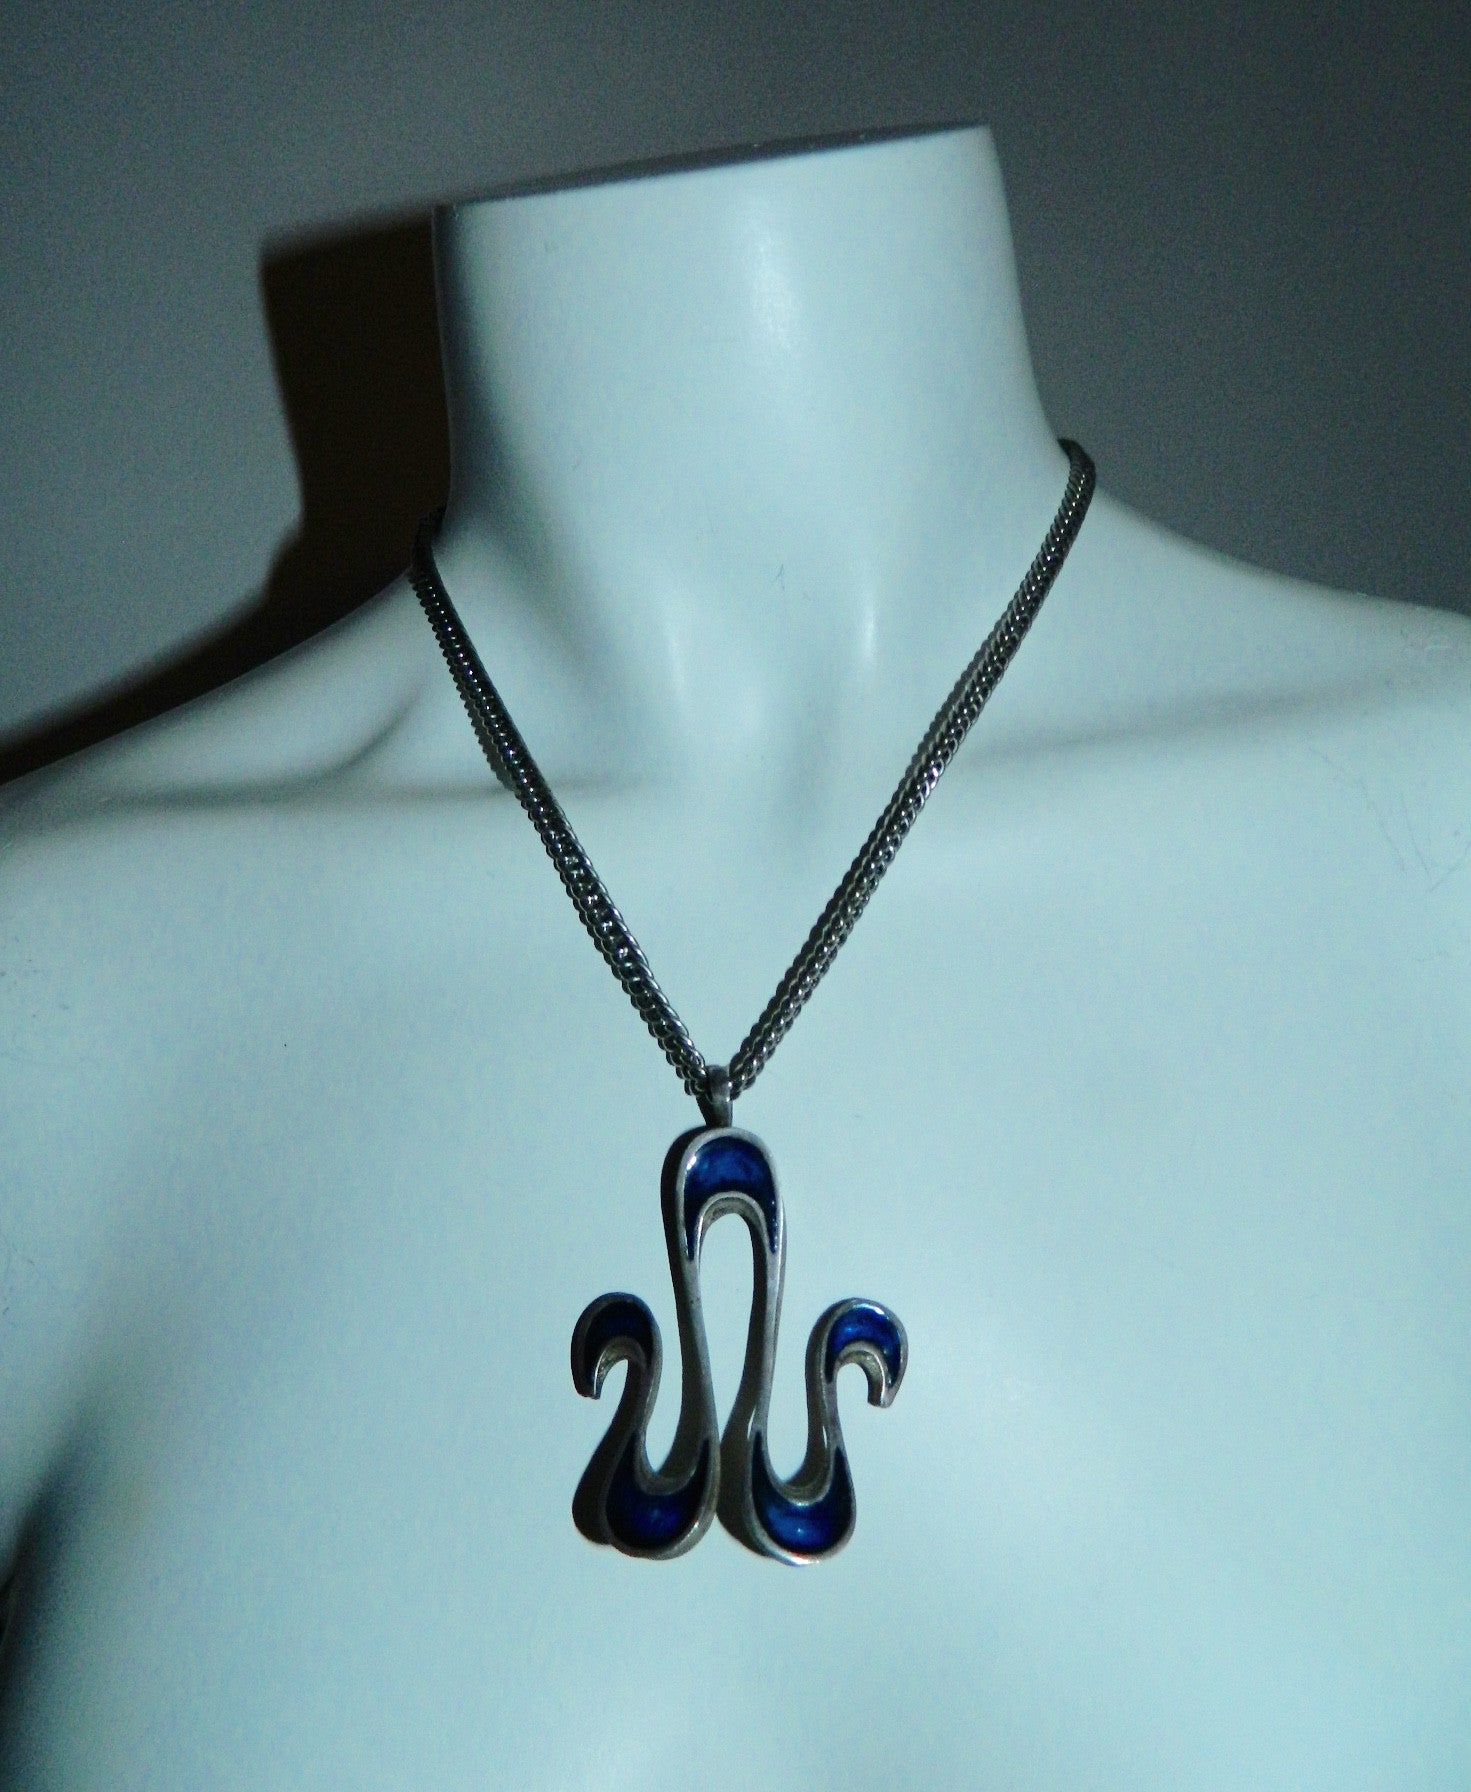 vintage 1960s enamel necklace / Aries Zodiac sign Ram / blue waves pendant MCM